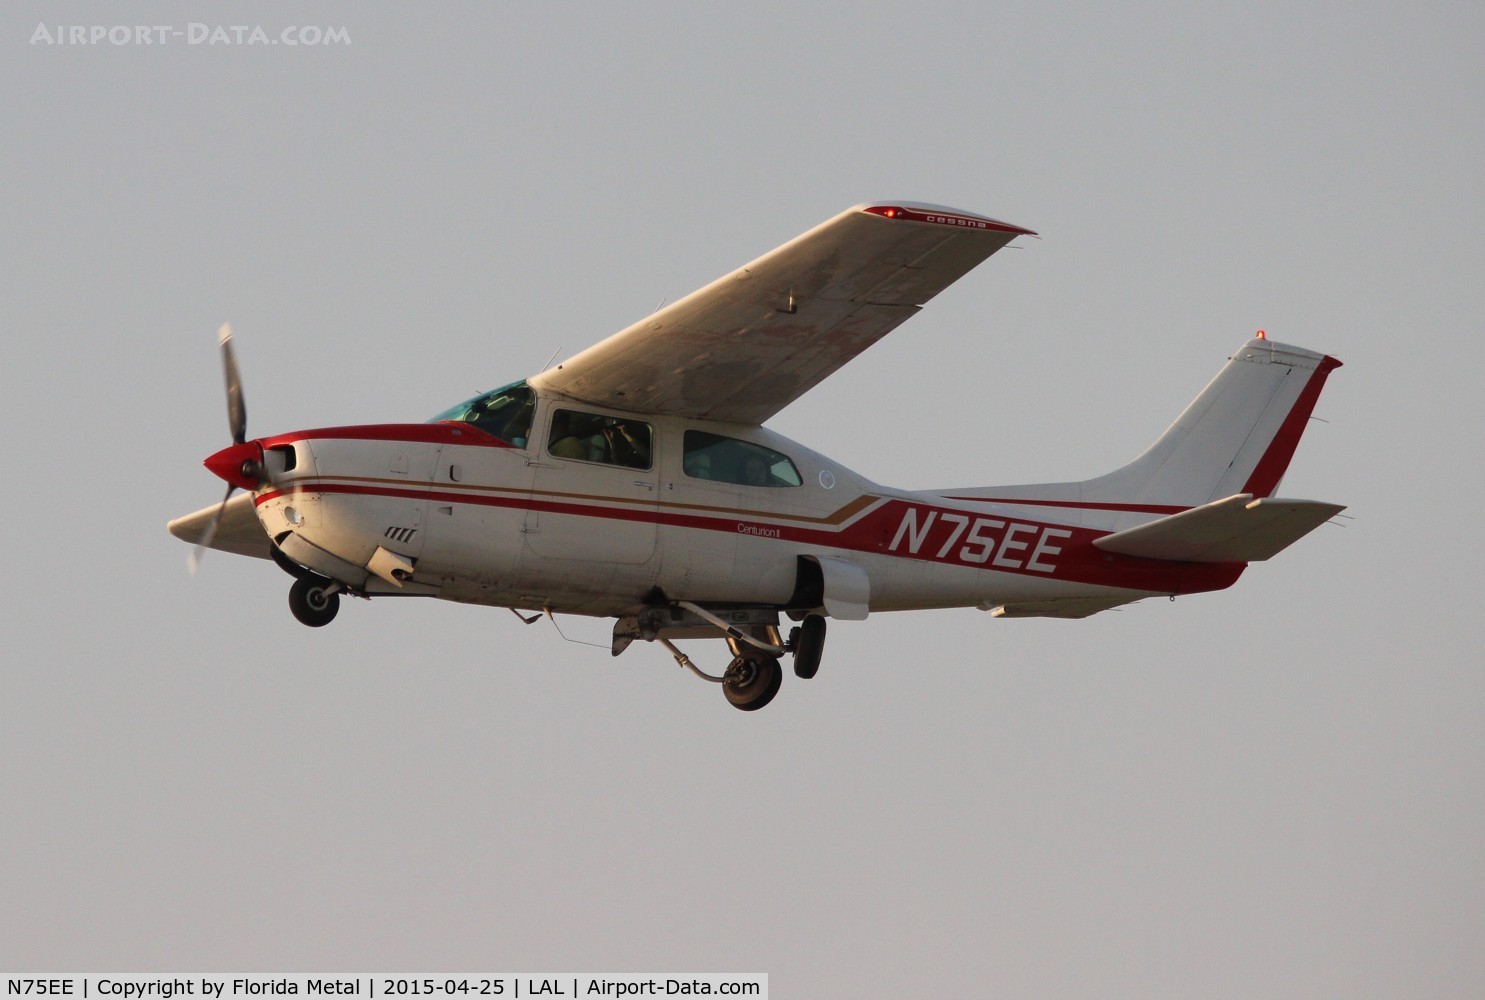 N75EE, 1975 Cessna 210L Centurion C/N 21060837, Cessna 210L